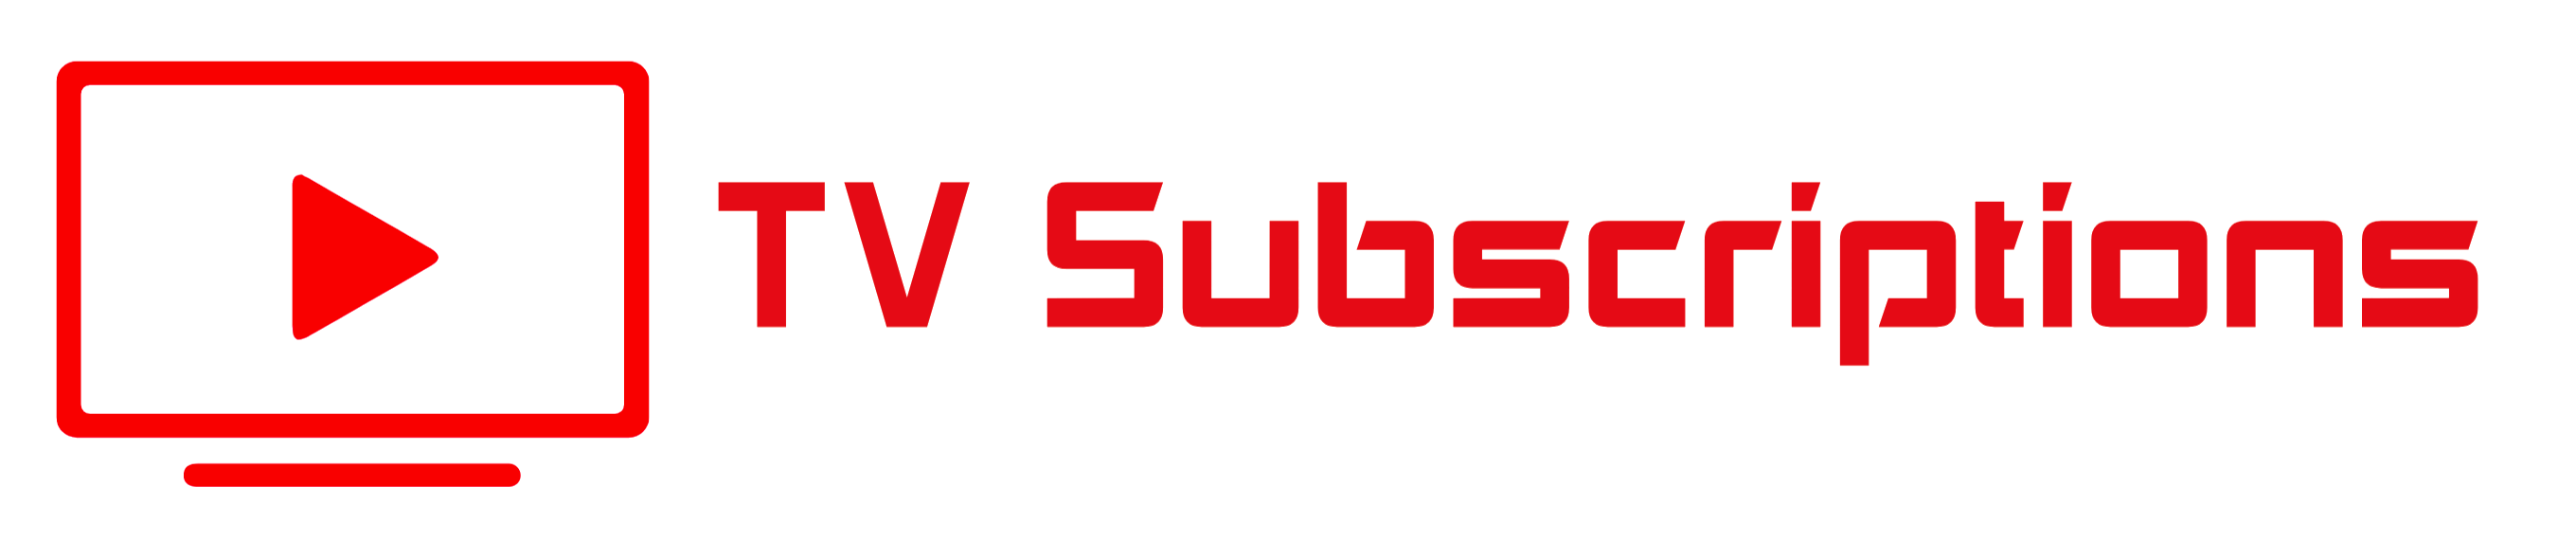 TV-SUB-logo